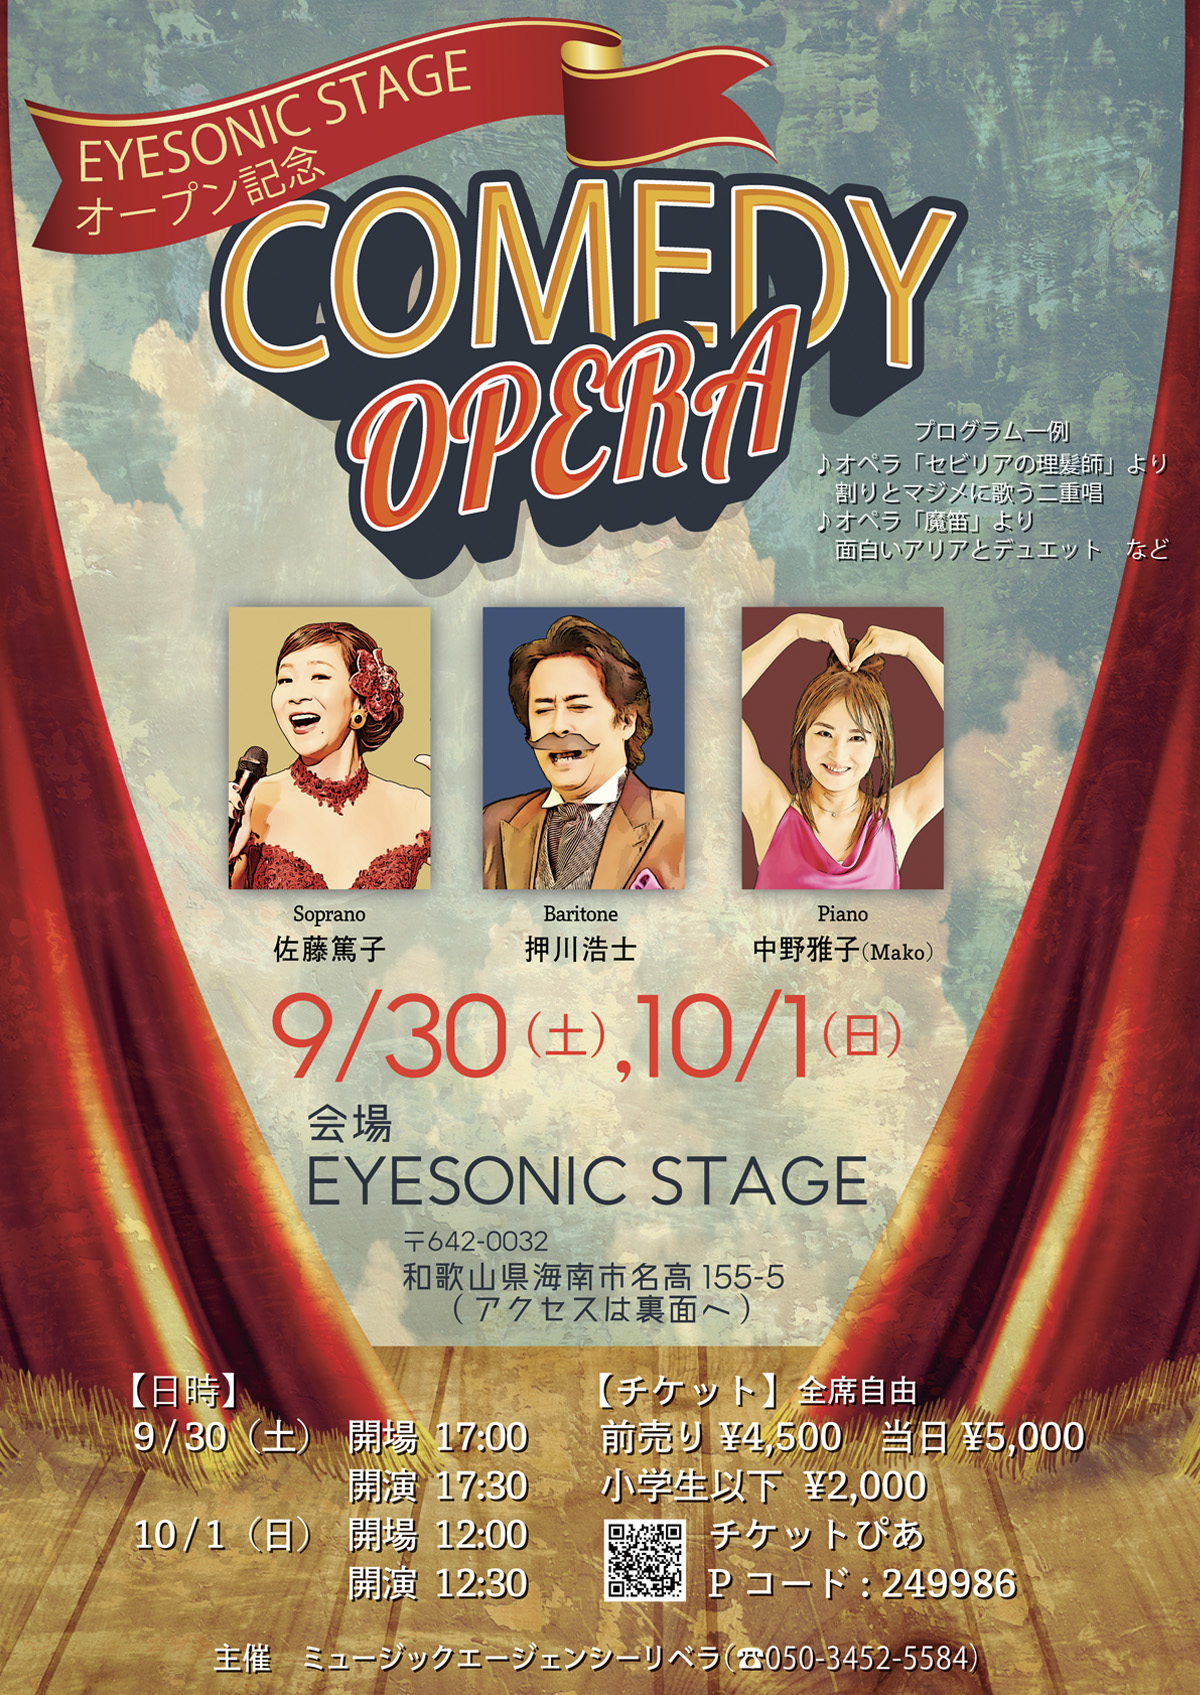 EYESONIC STAGE オープン記念 「Comedy Opera」